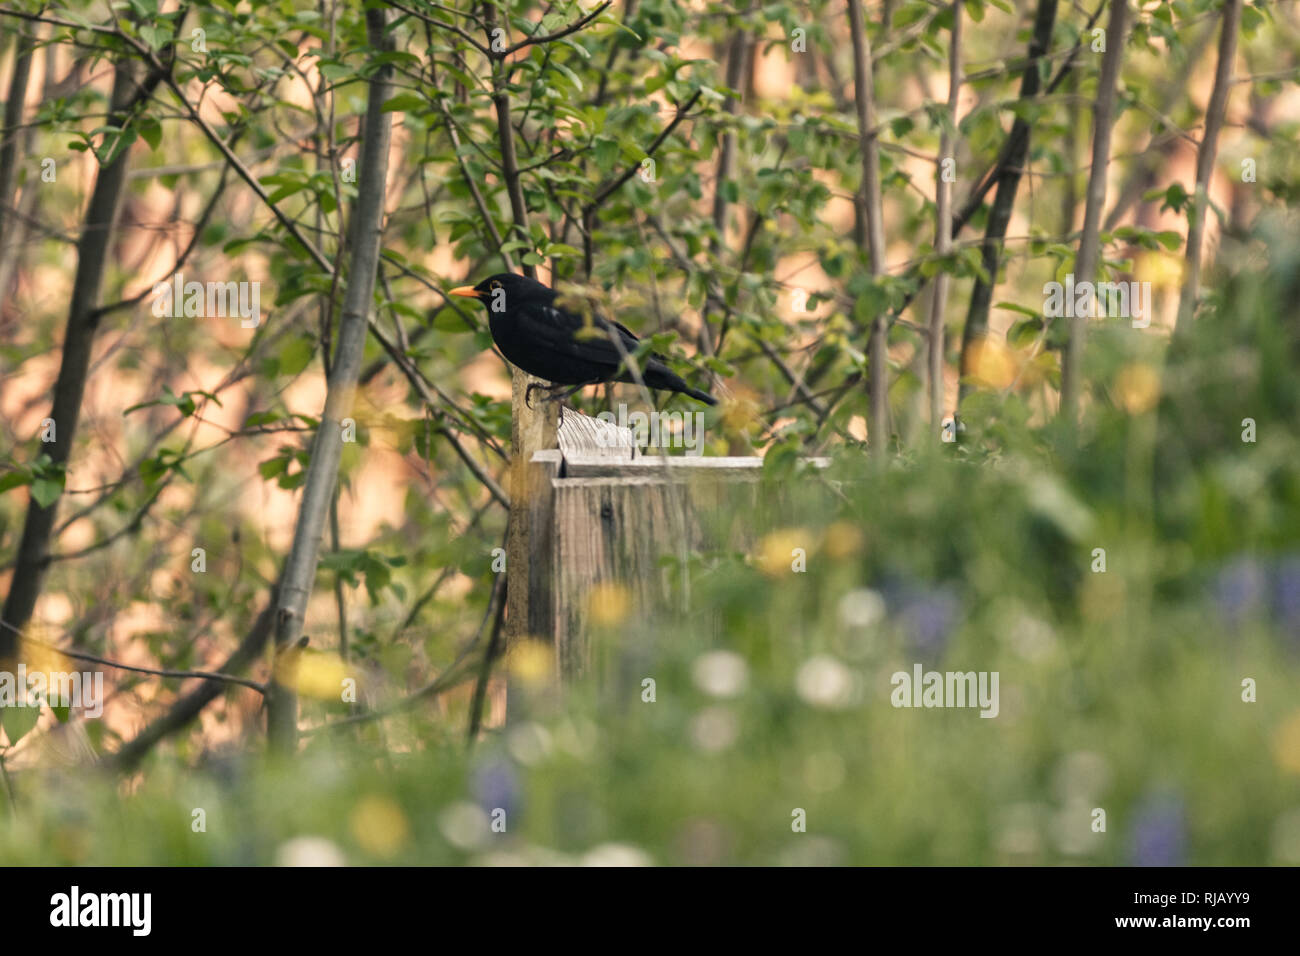 Eine Amsel (Turdus merula) sitzt auf einem Holzzaun und beobachtet die Umgebung, Stock Photo